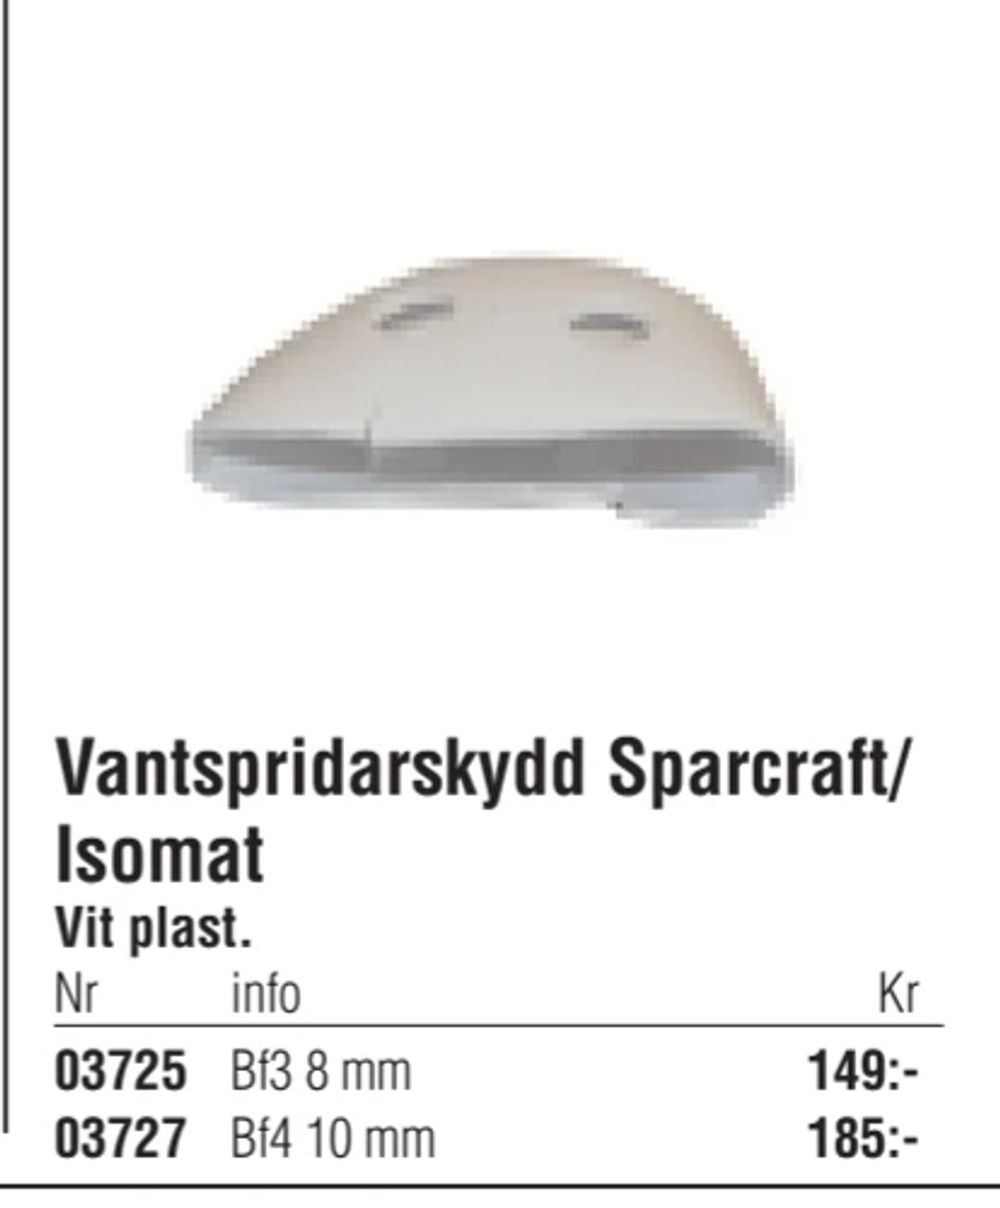 Erbjudanden på Vantspridarskydd Sparcraft/ Isomat från Erlandsons Brygga för 149 kr